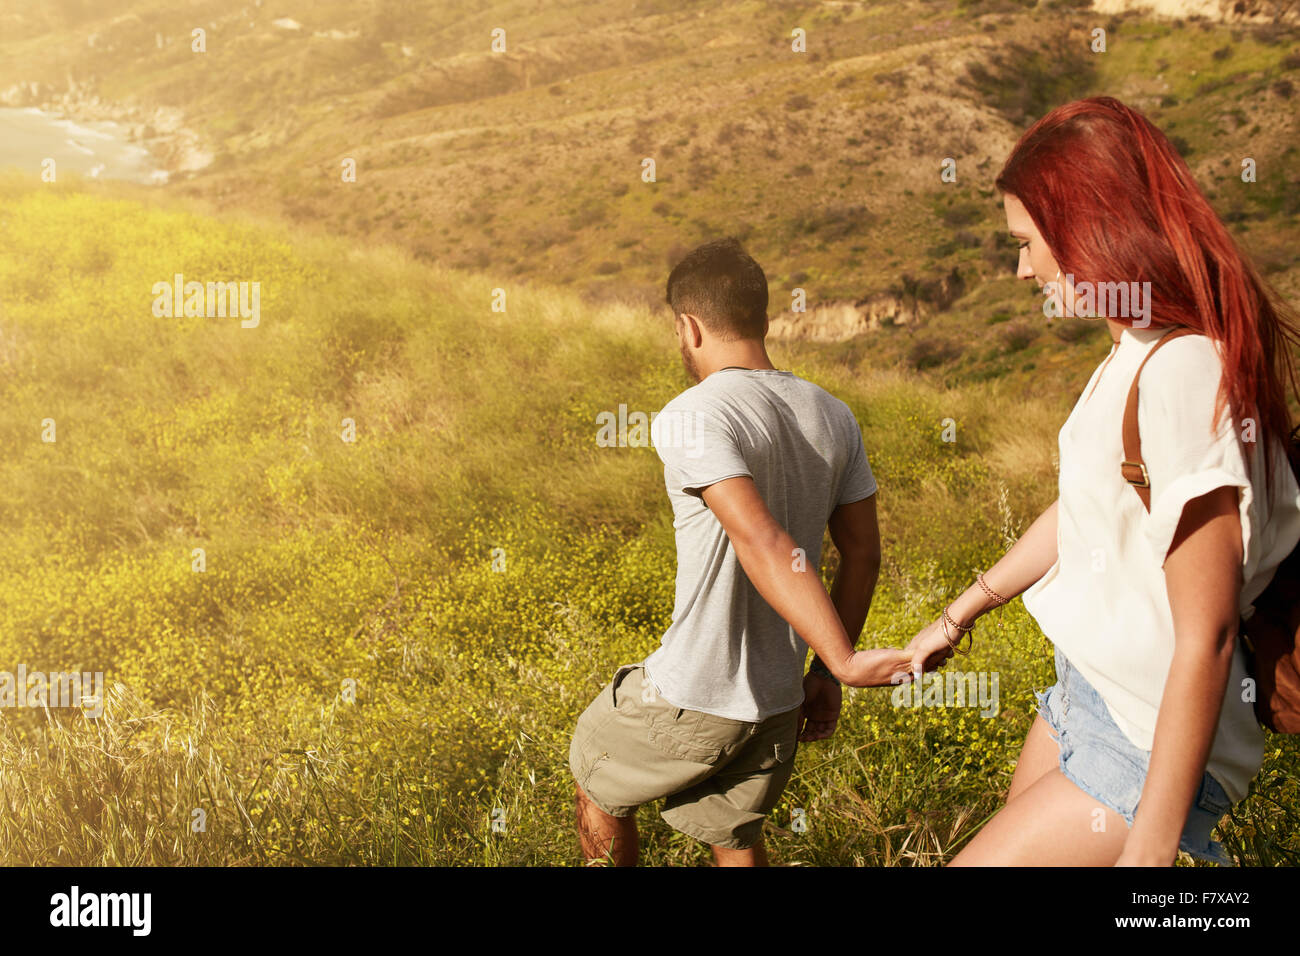 Im Freien Schuss des jungen Paares auf ihren Urlaub genießen, hinunter eine Spitze, die Hand in Hand. Kaukasische paar Wandern an einem Sommertag Stockfoto